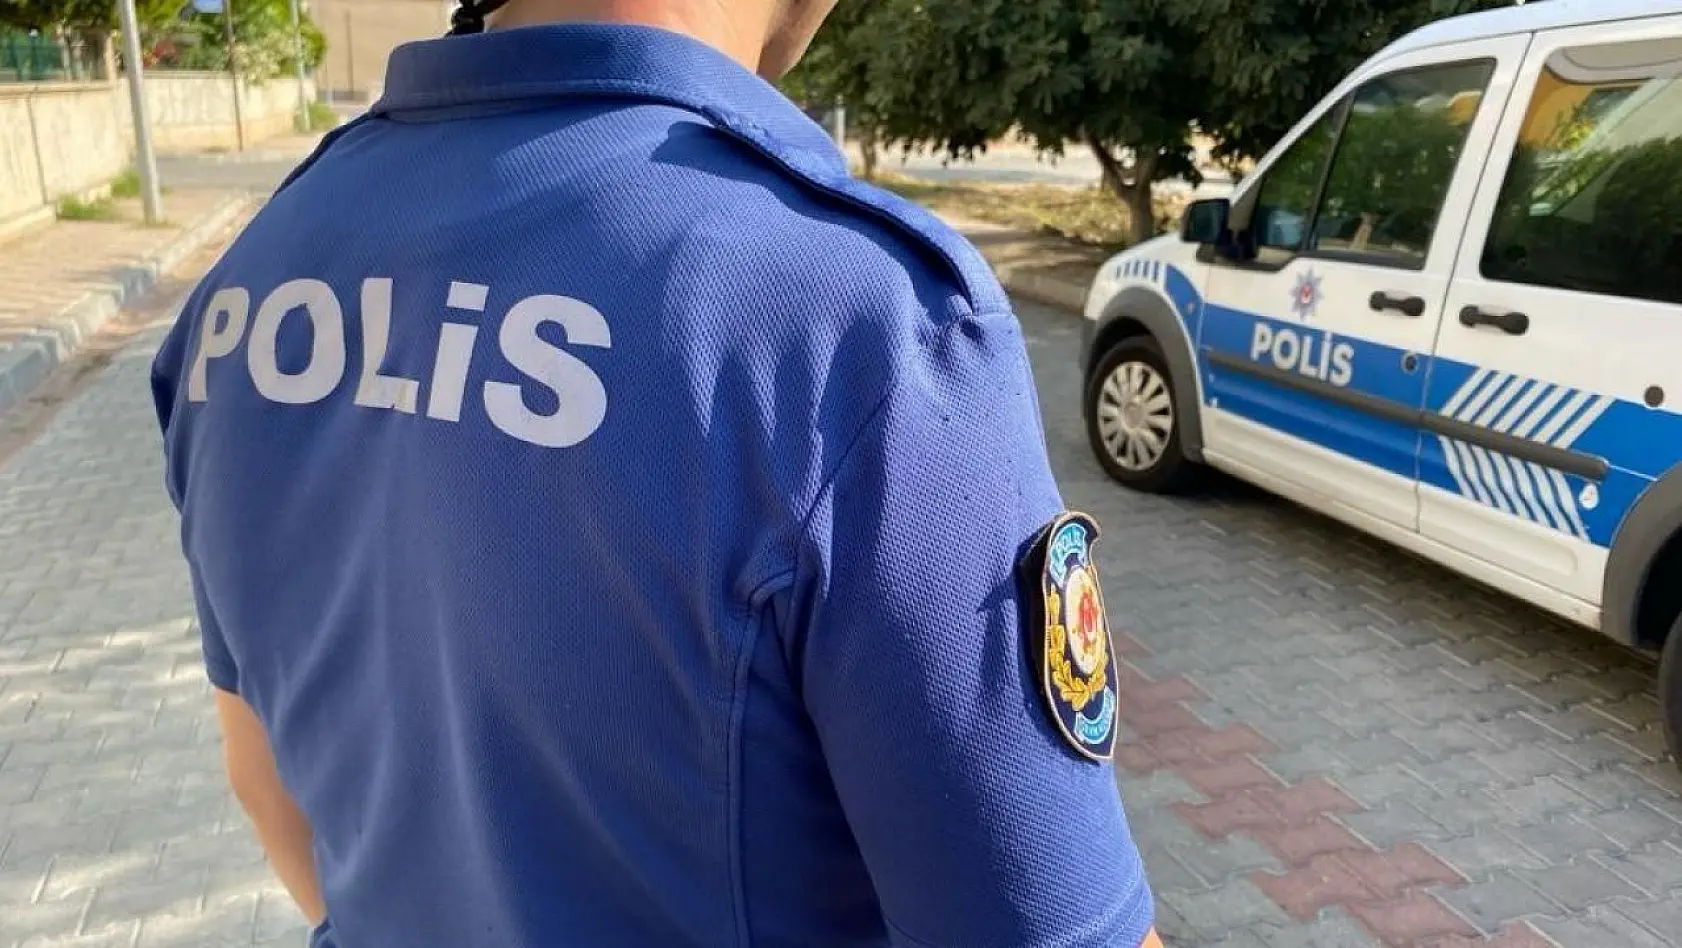 Aydın'da 2 kasten öldürme şüphelisi polis ekiplerince yakalandı